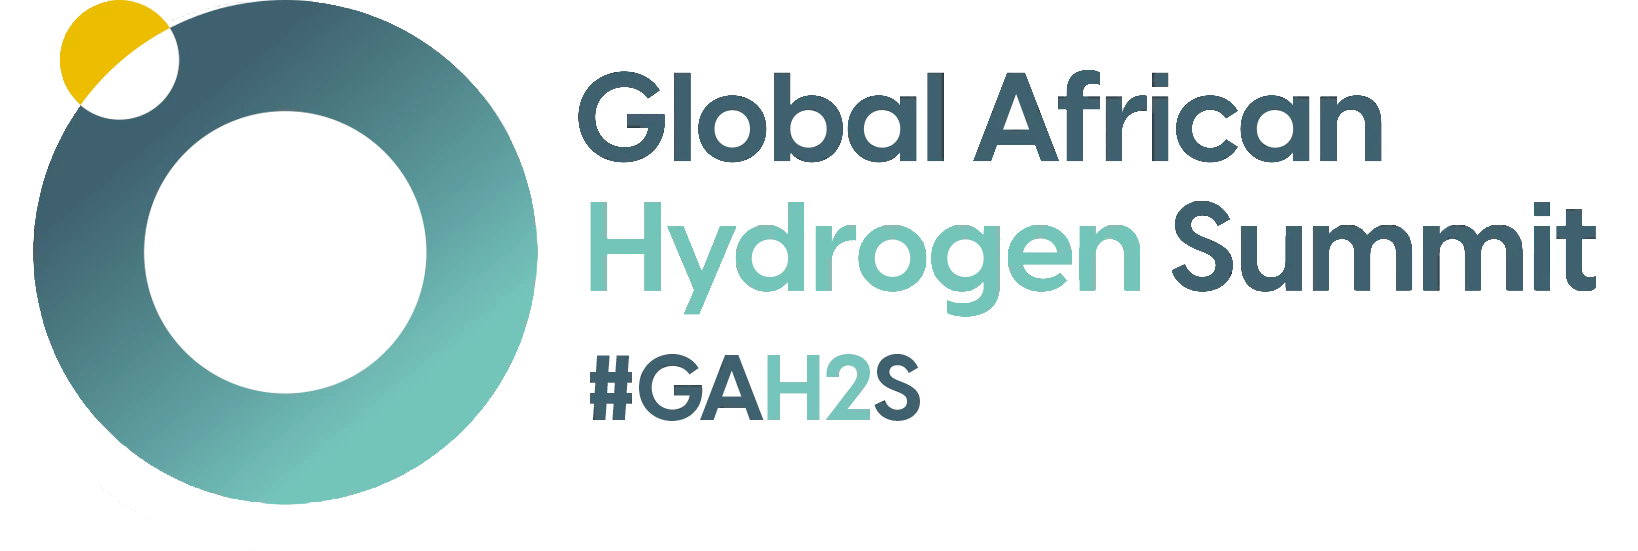 GLOBAL AFRICAN HYDROGEN SUMMIT (GAH2S)